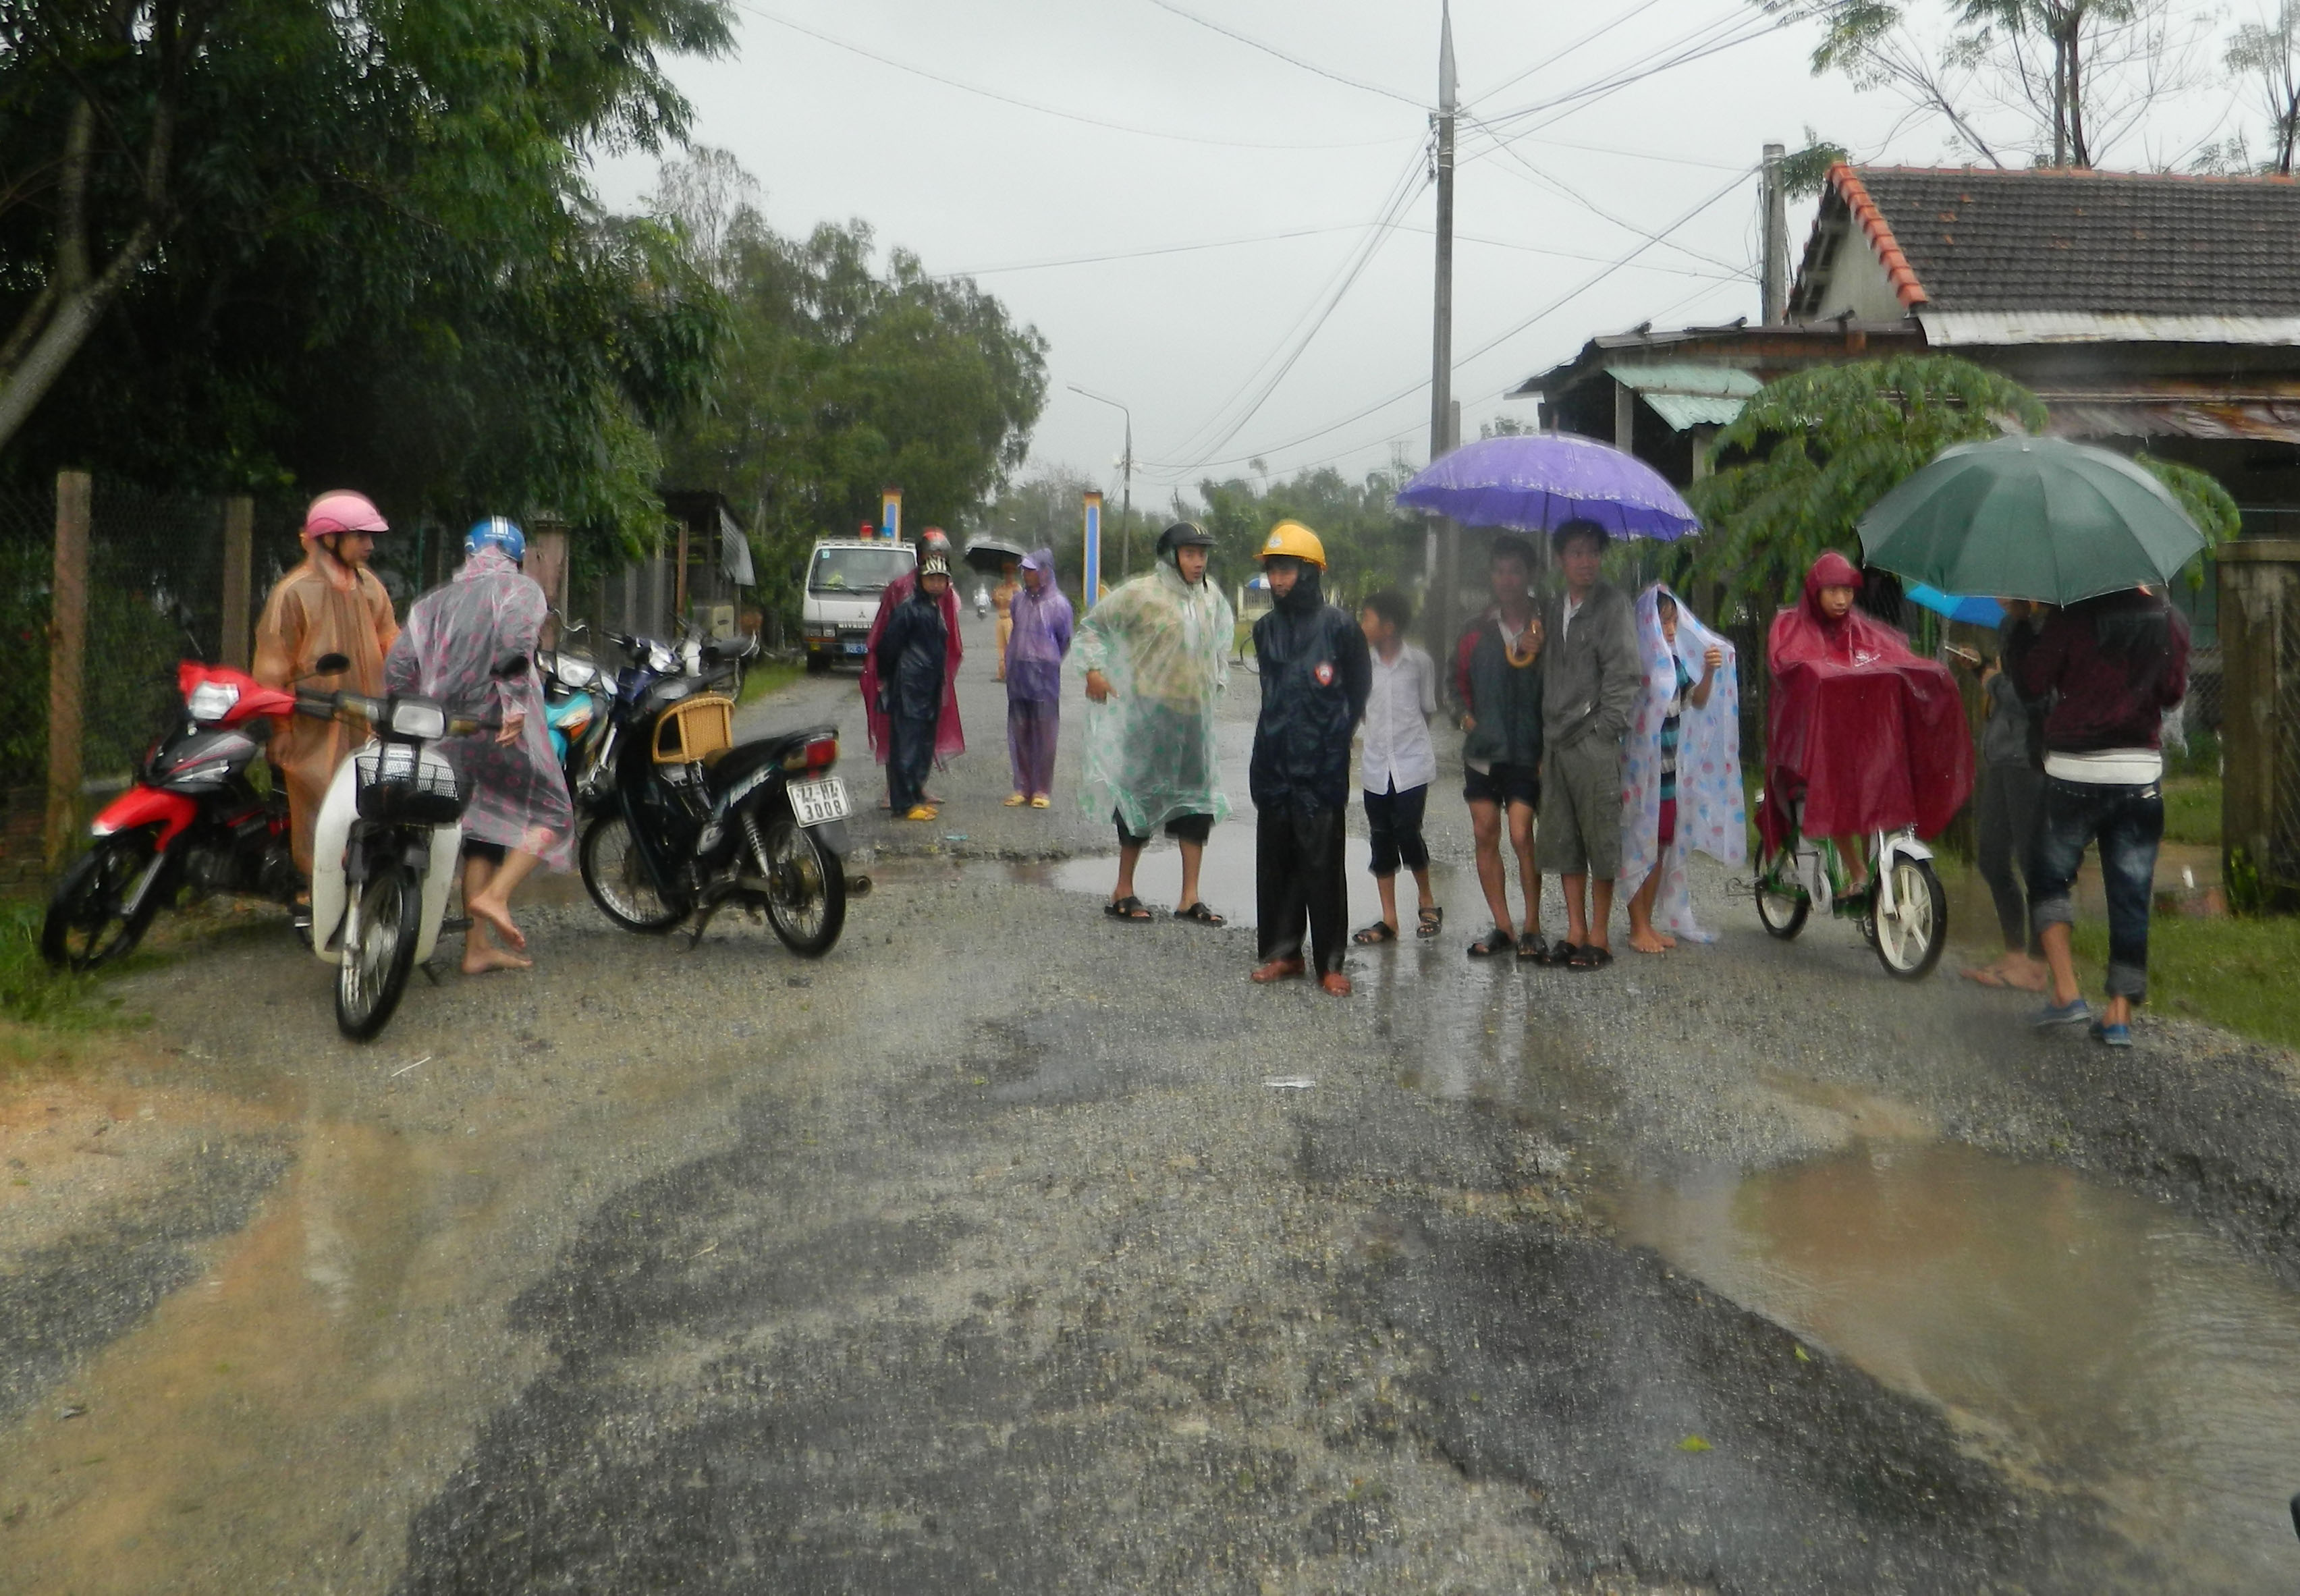 Người dân theo dõi diễn biến vụ ứng cứu mẹ con chị Vũ tại đoạn đường ngập lũ ở H.Phú Ninh. Ảnh: Thanh niên